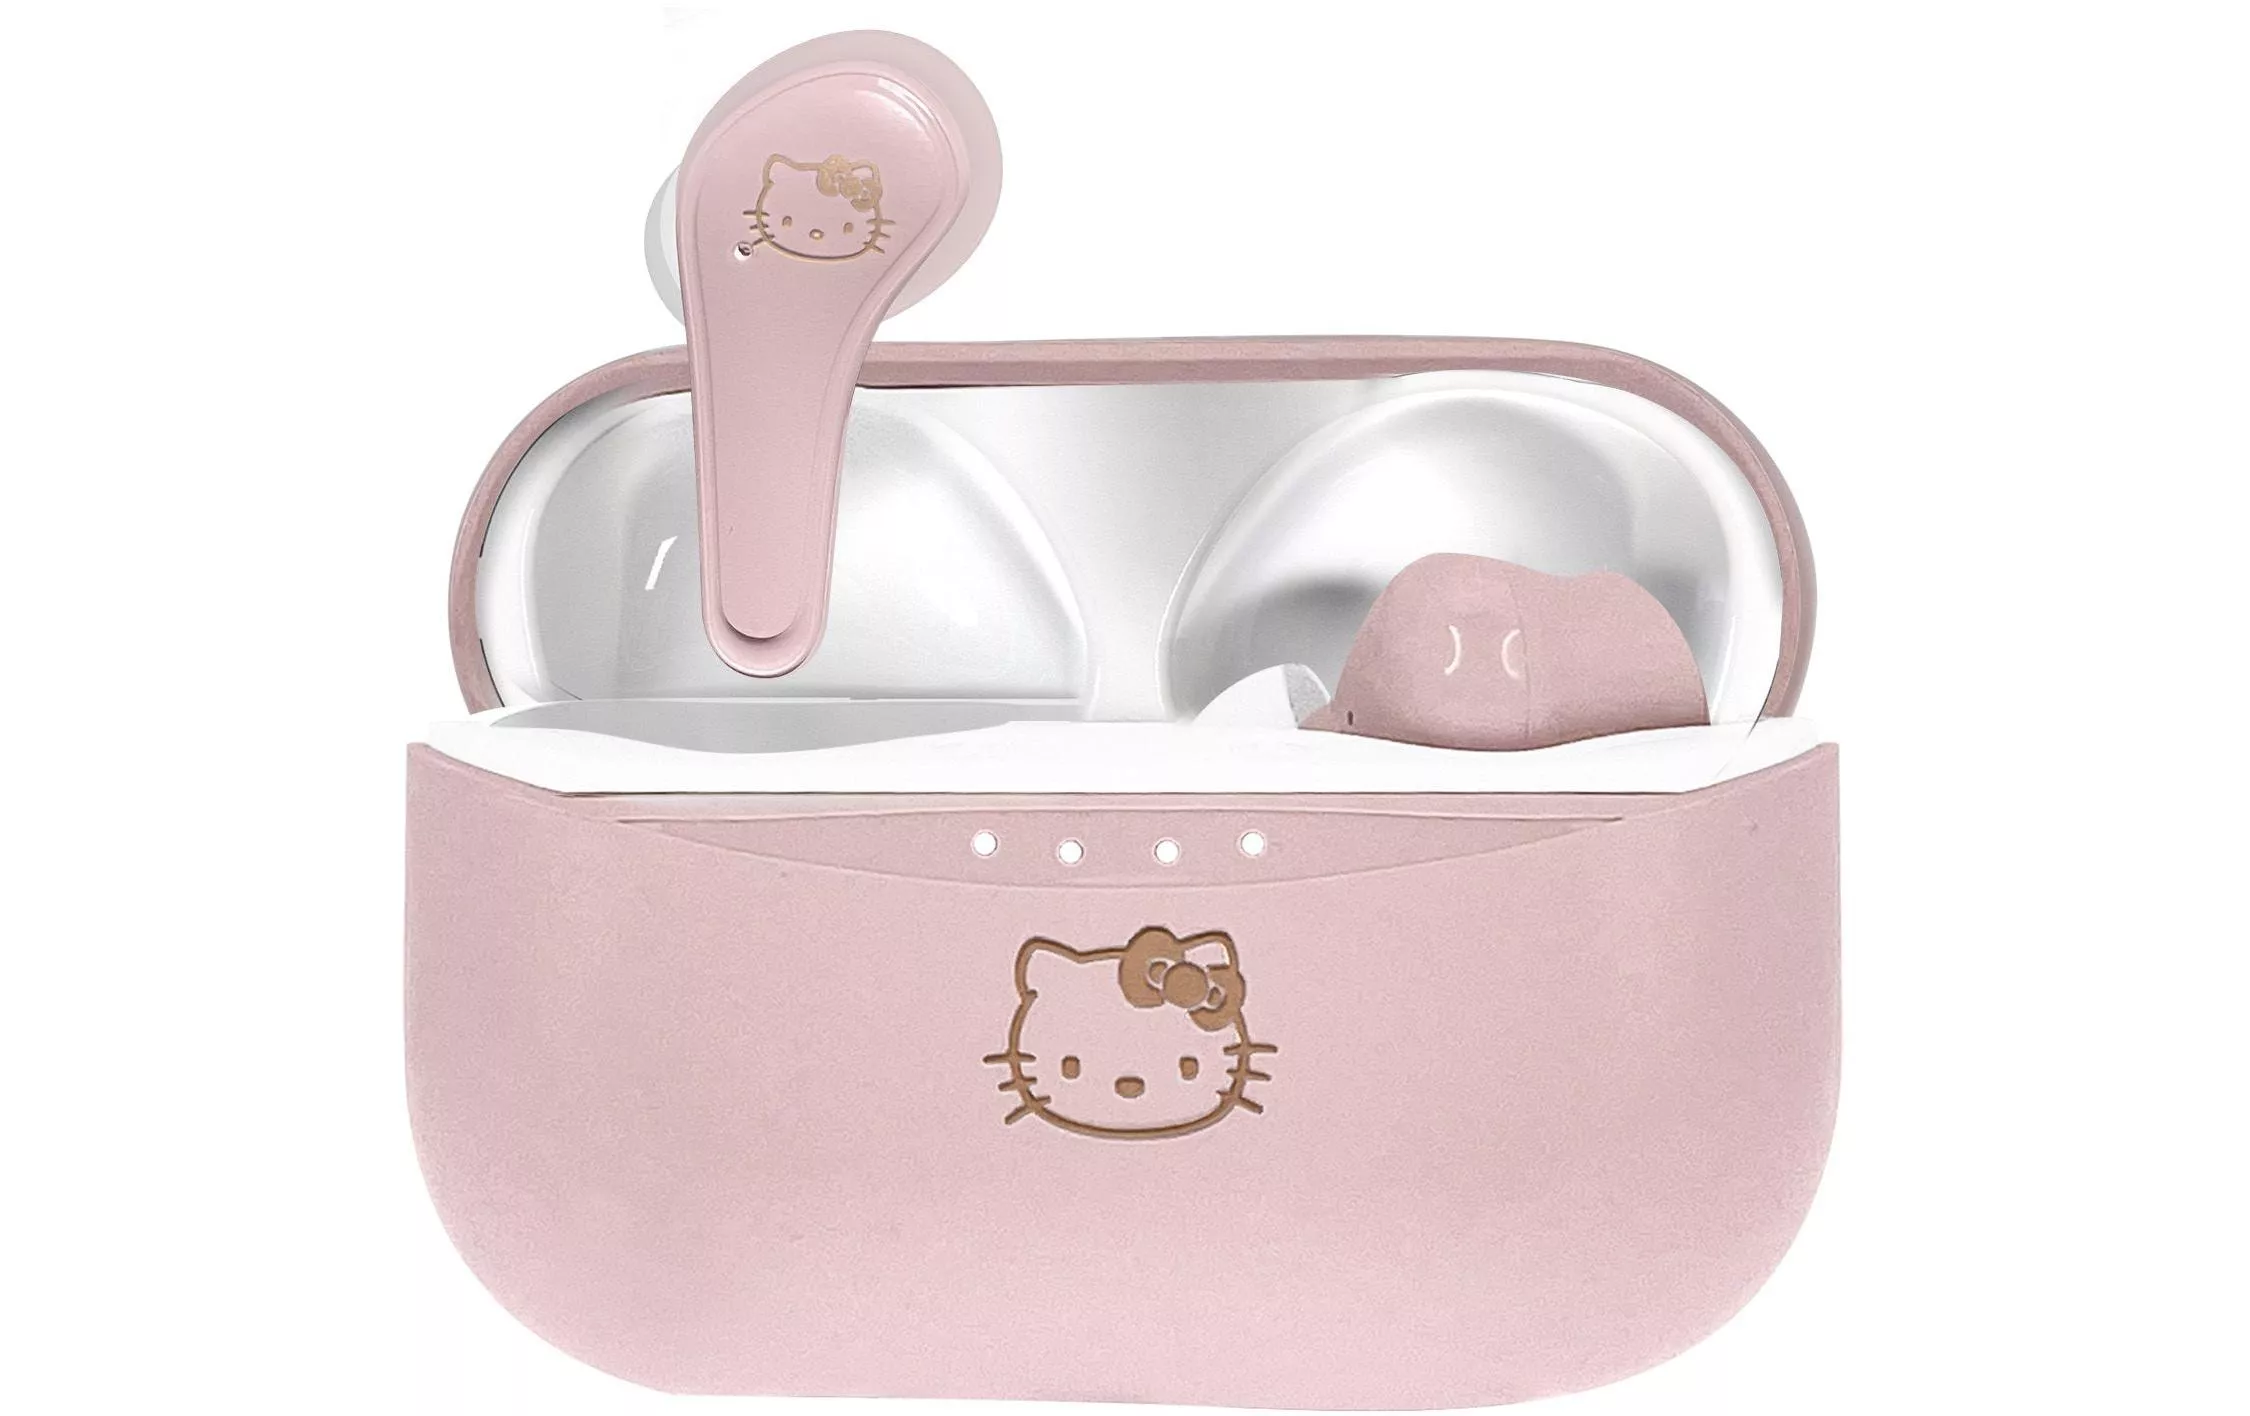 True Wireless In-Ear Headphones Hello Kitty Pink